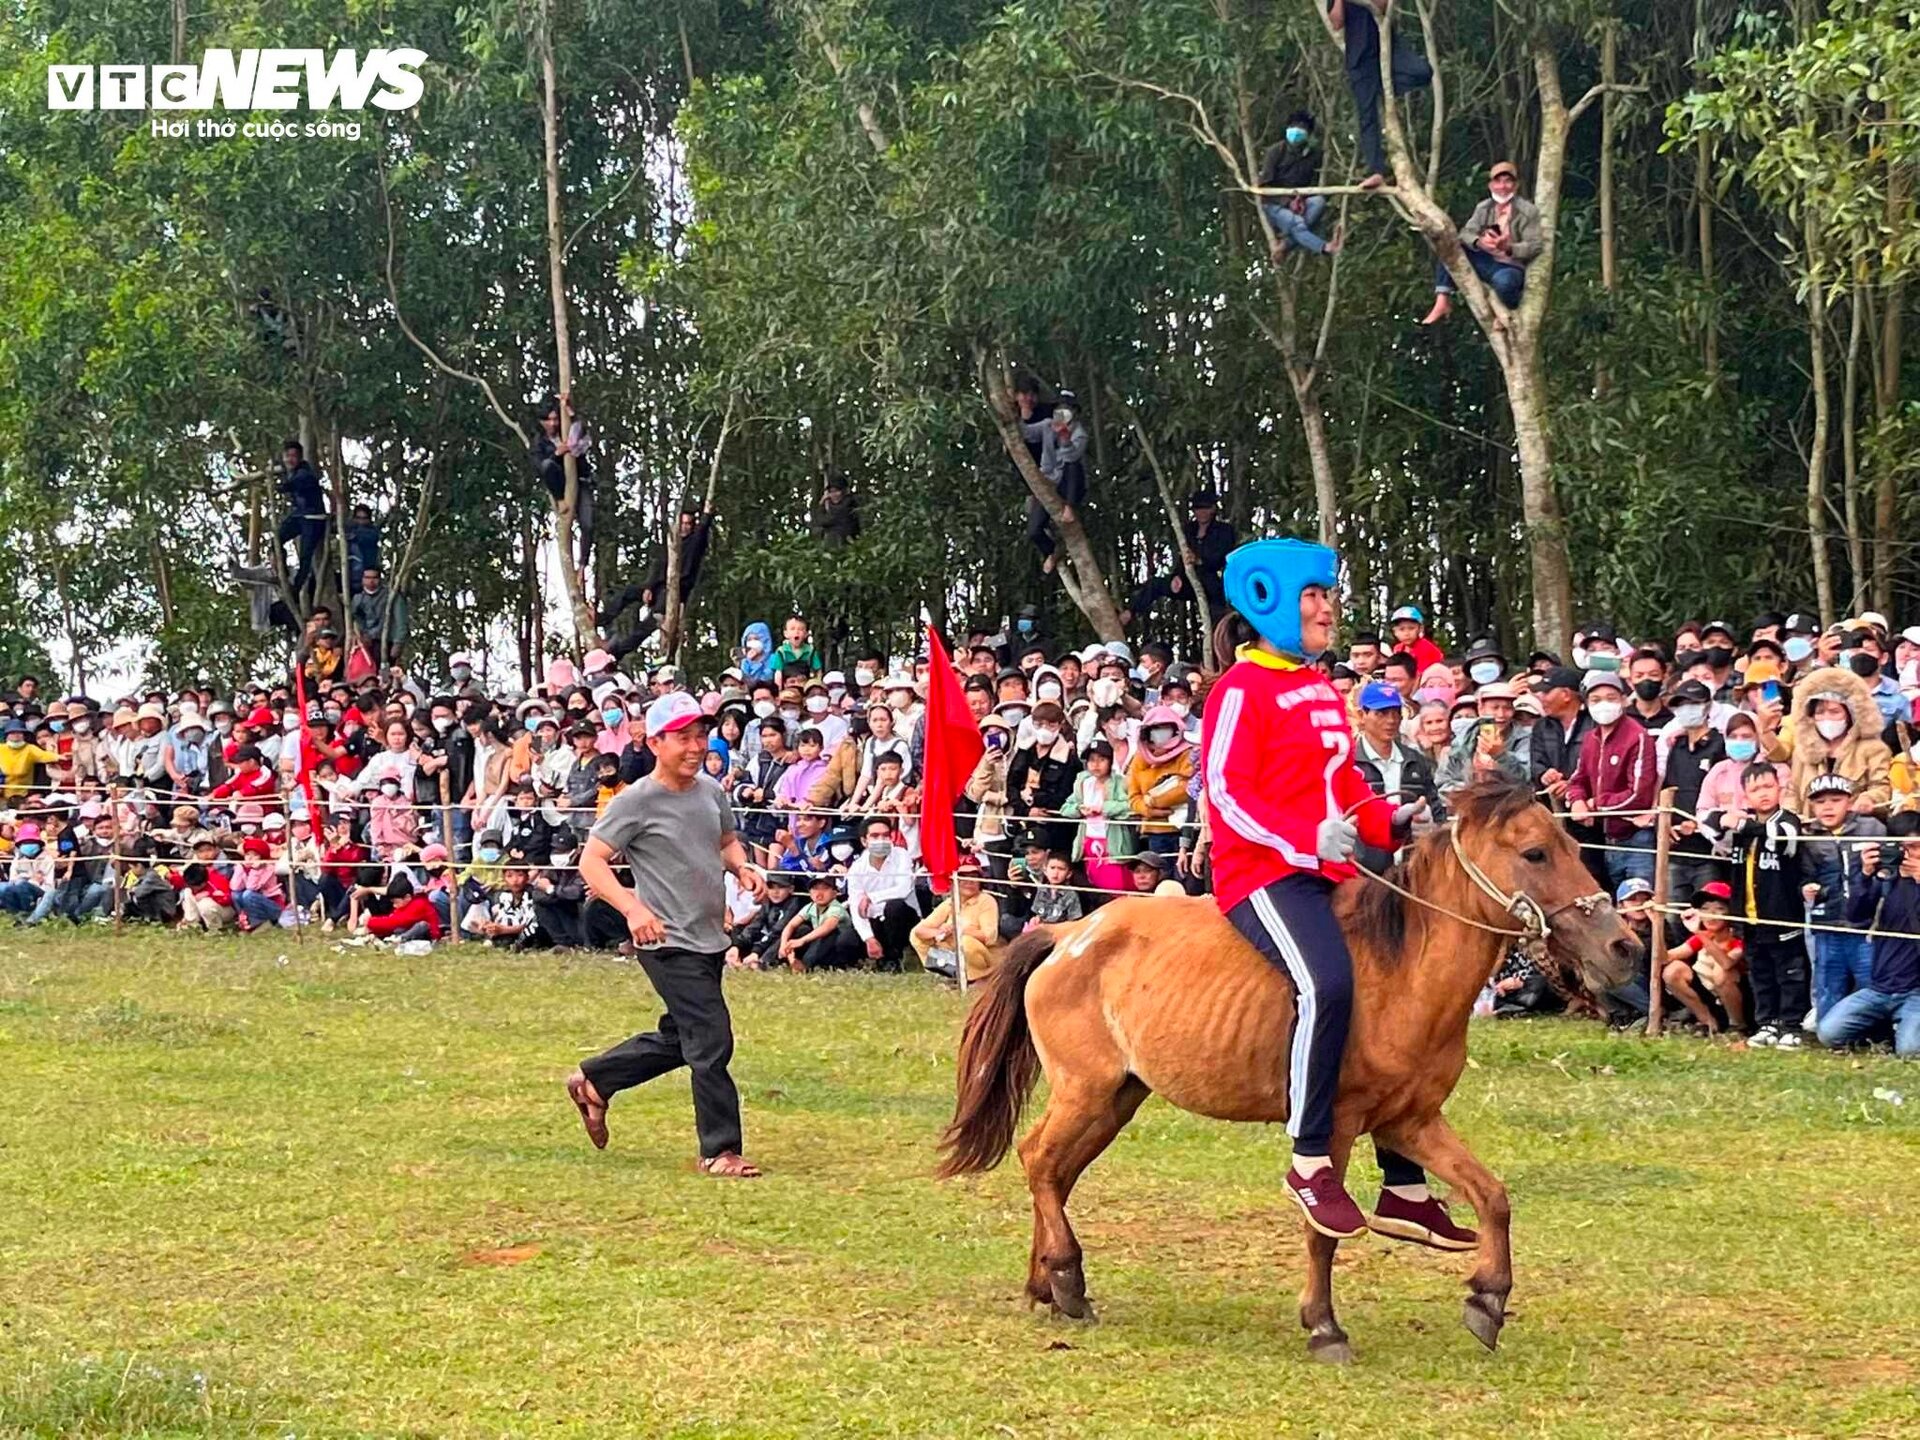 Xem nữ 'kỵ sĩ nông dân' tranh tài tại lễ hội đua ngựa độc nhất vô nhị Phú Yên - 7